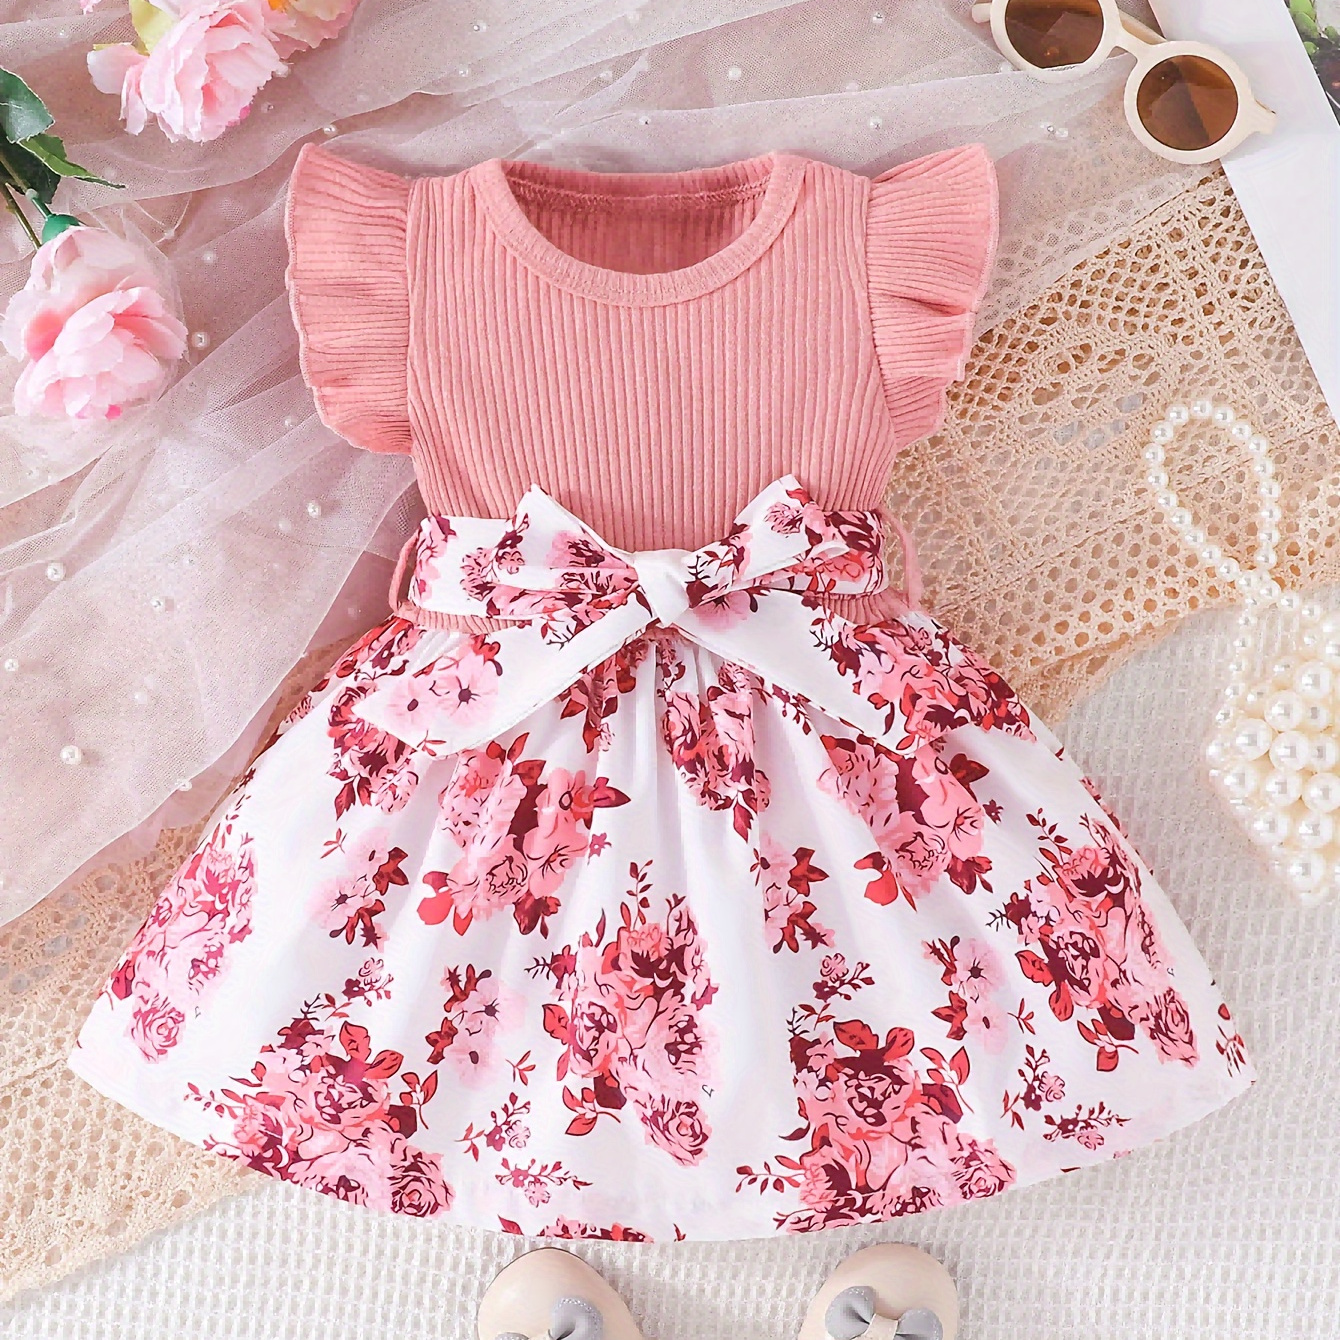 

Baby Girls Fashion Casual Dress Cute Baby Girl Flower Ruffle Dress